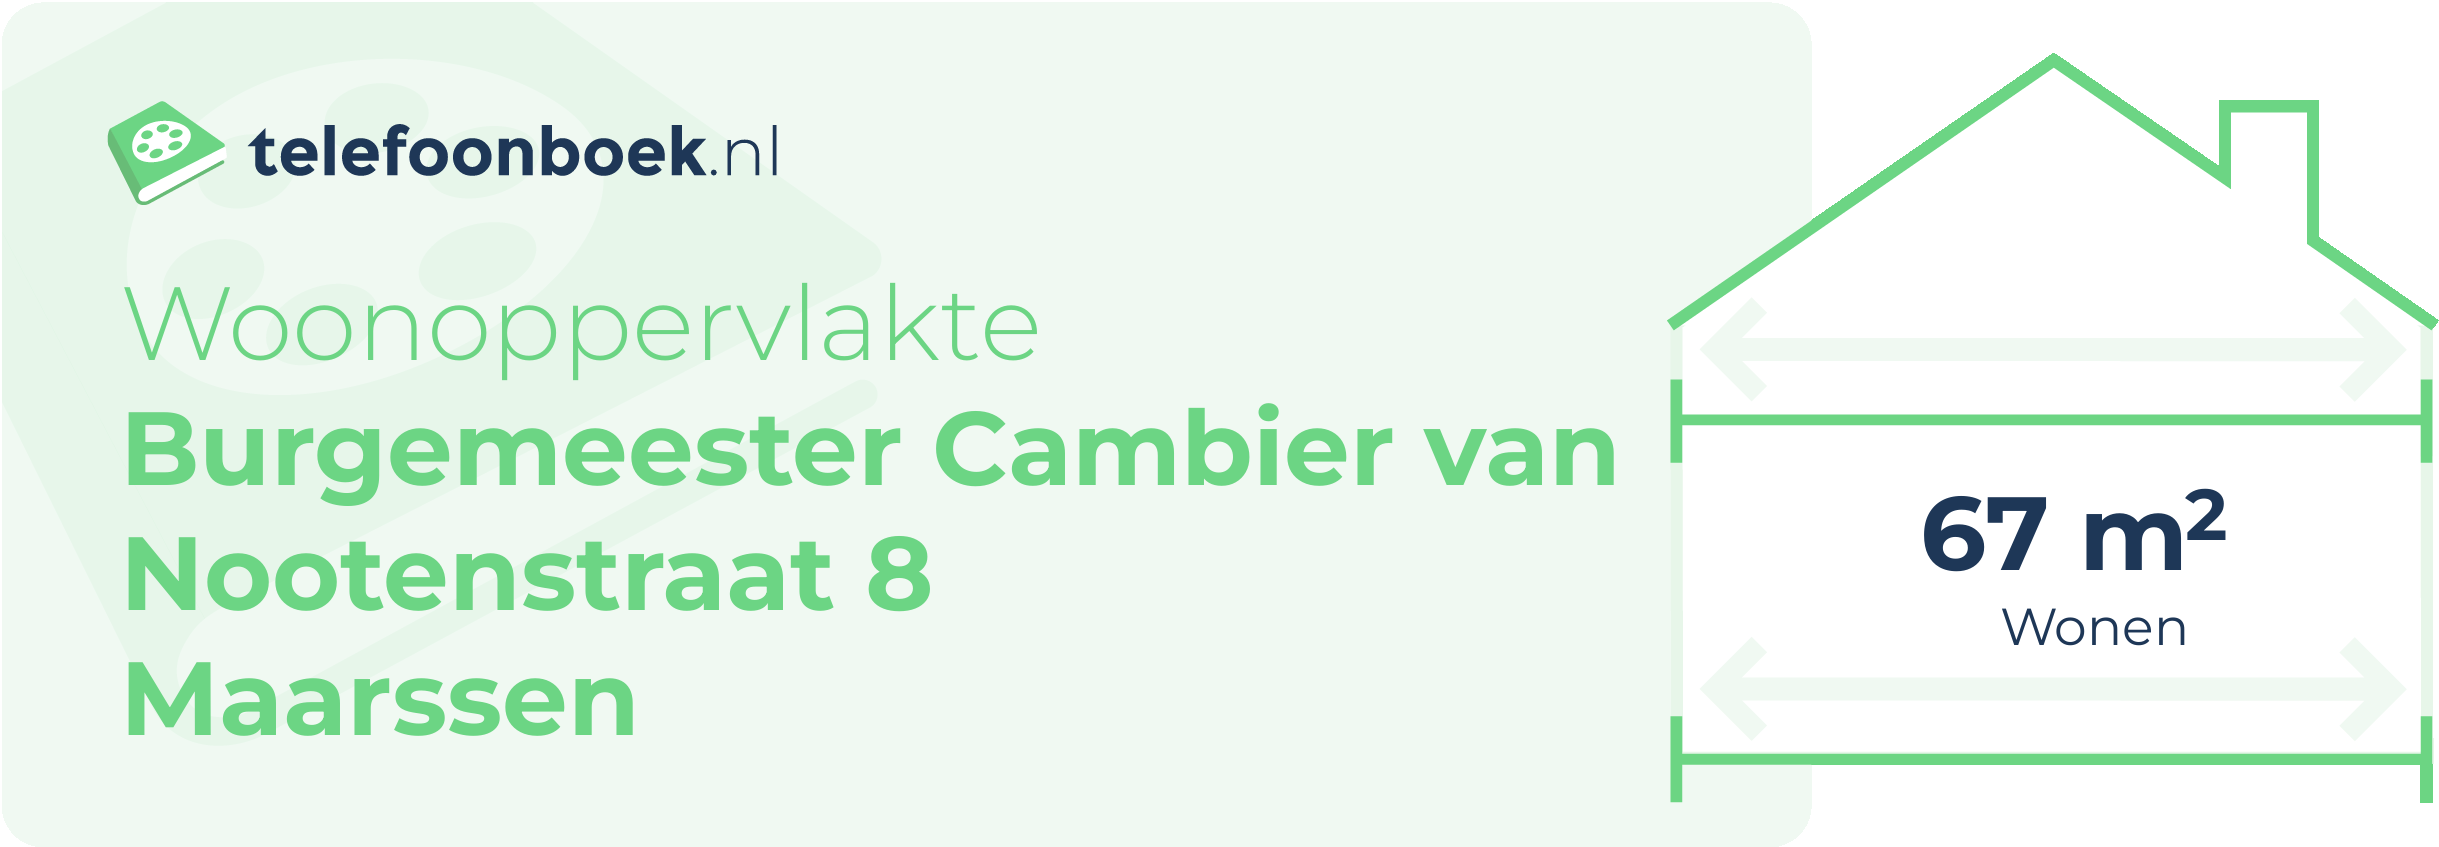 Woonoppervlakte Burgemeester Cambier Van Nootenstraat 8 Maarssen